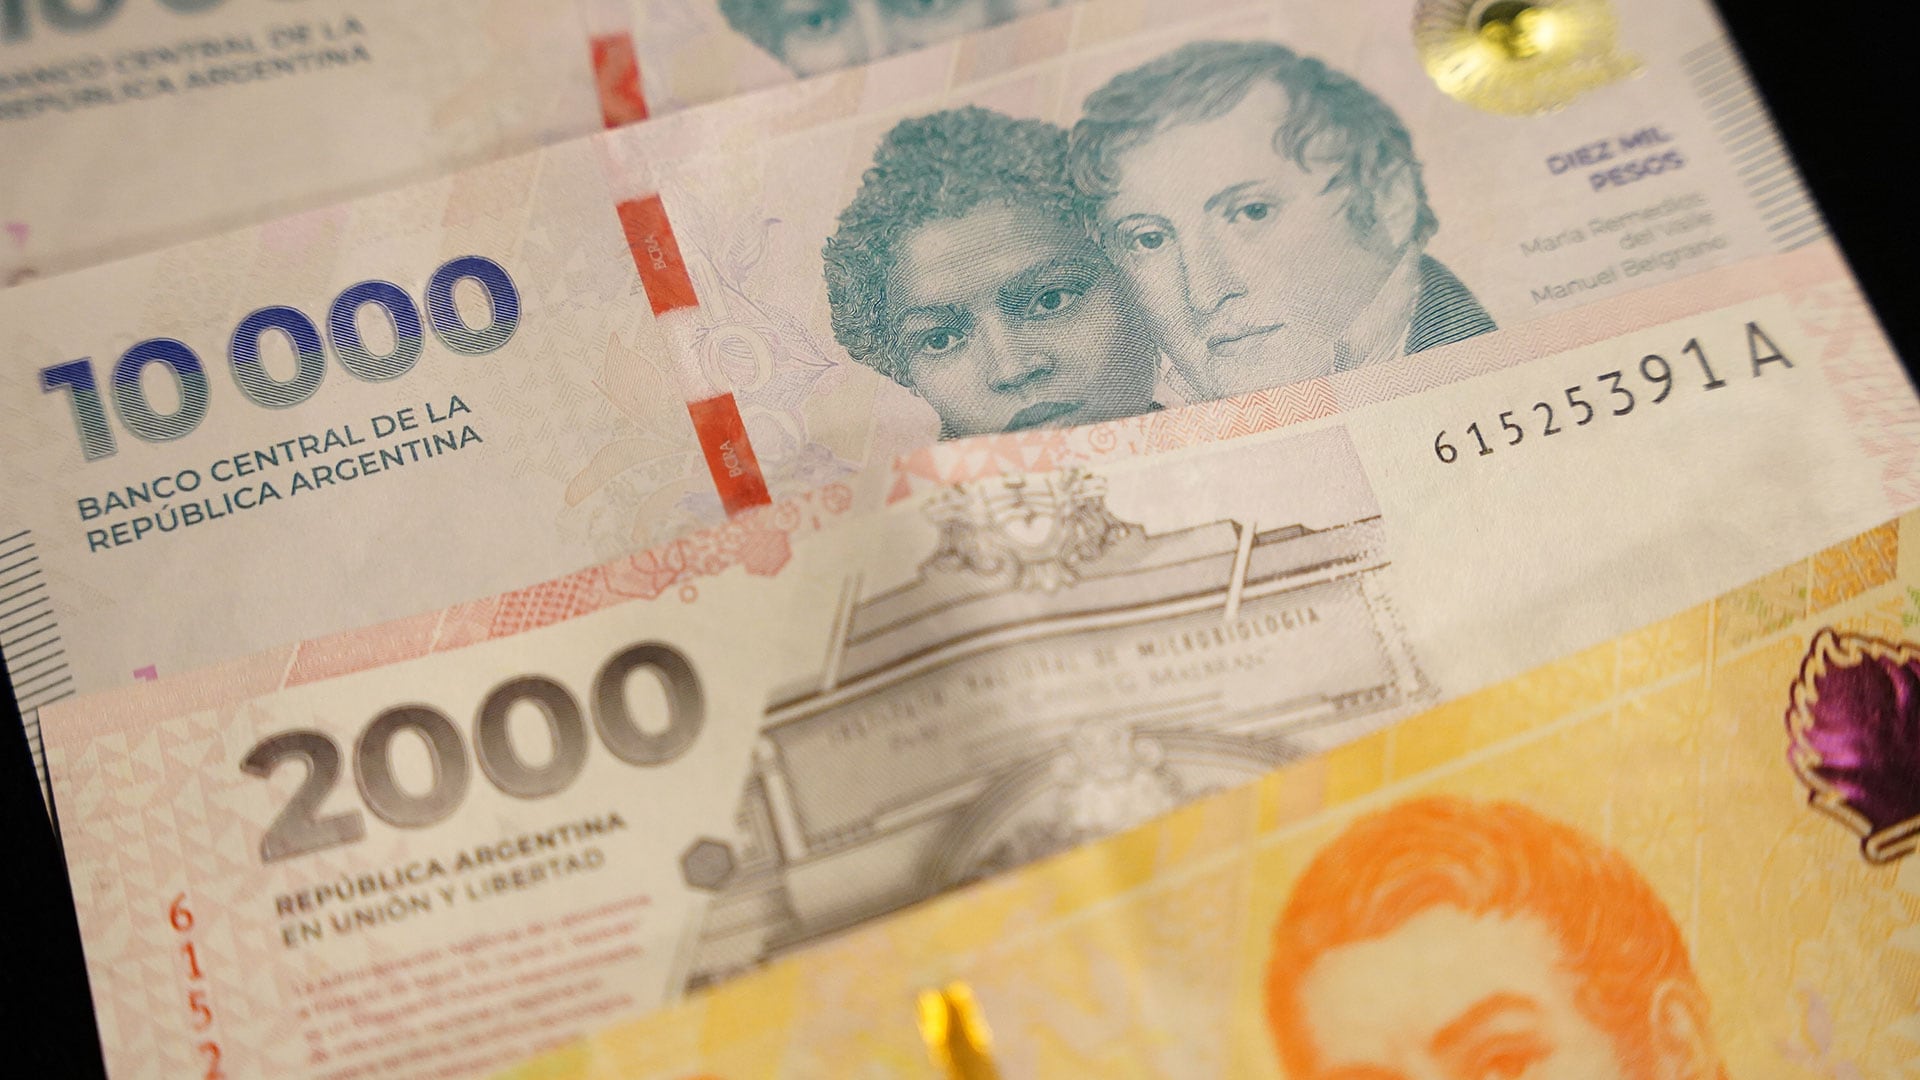 Nuevo Billete 10000 pesos argentinos